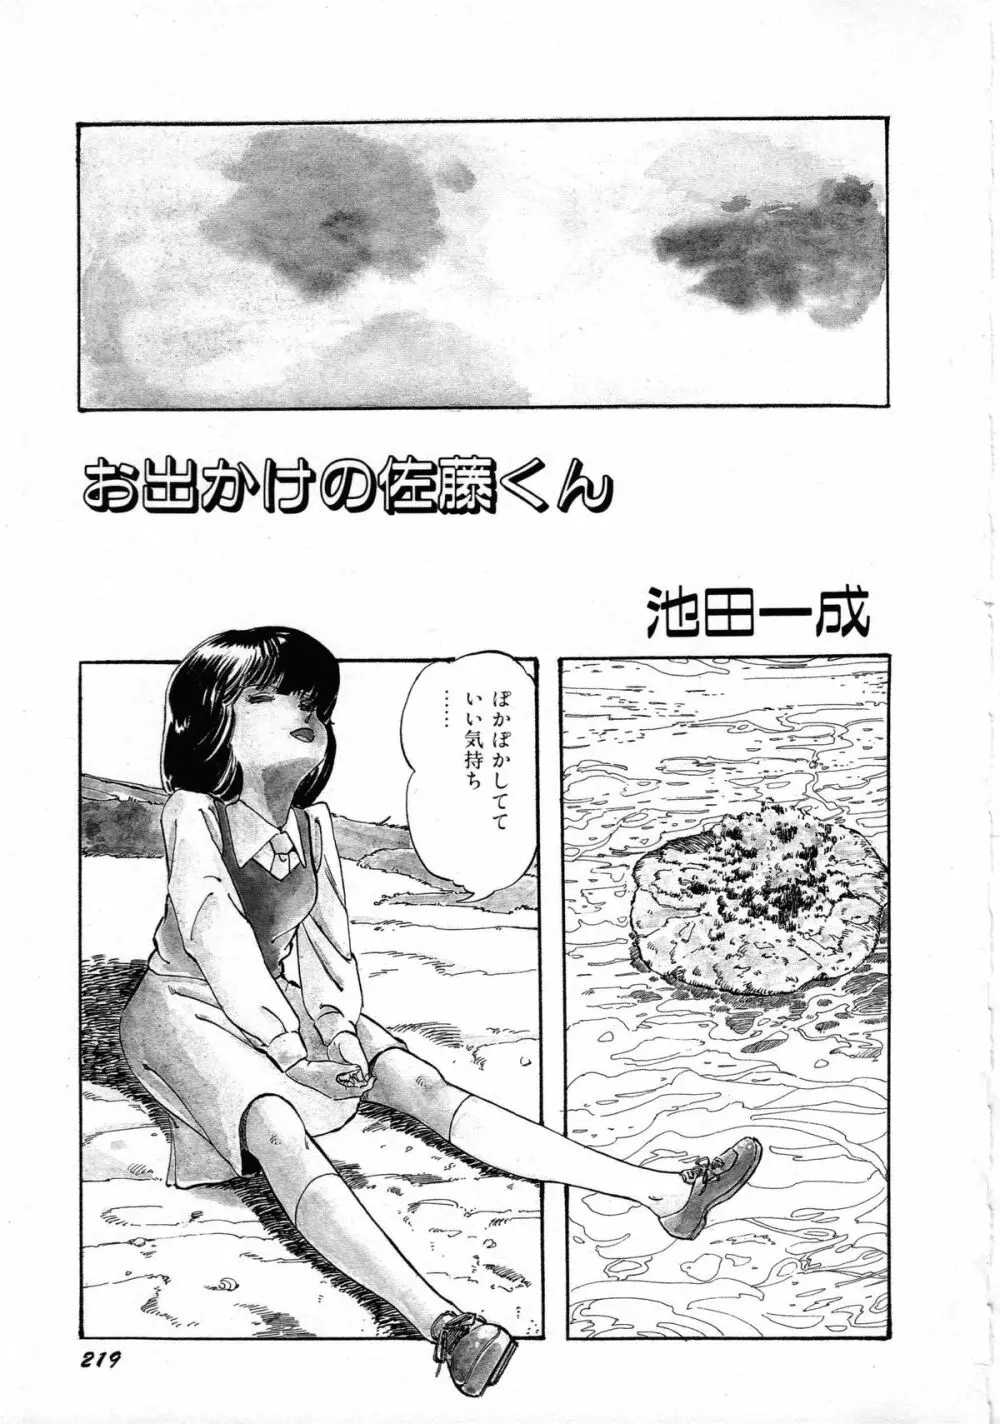 ロボット&美少女傑作選 レモン・ピープル1982-1986 223ページ